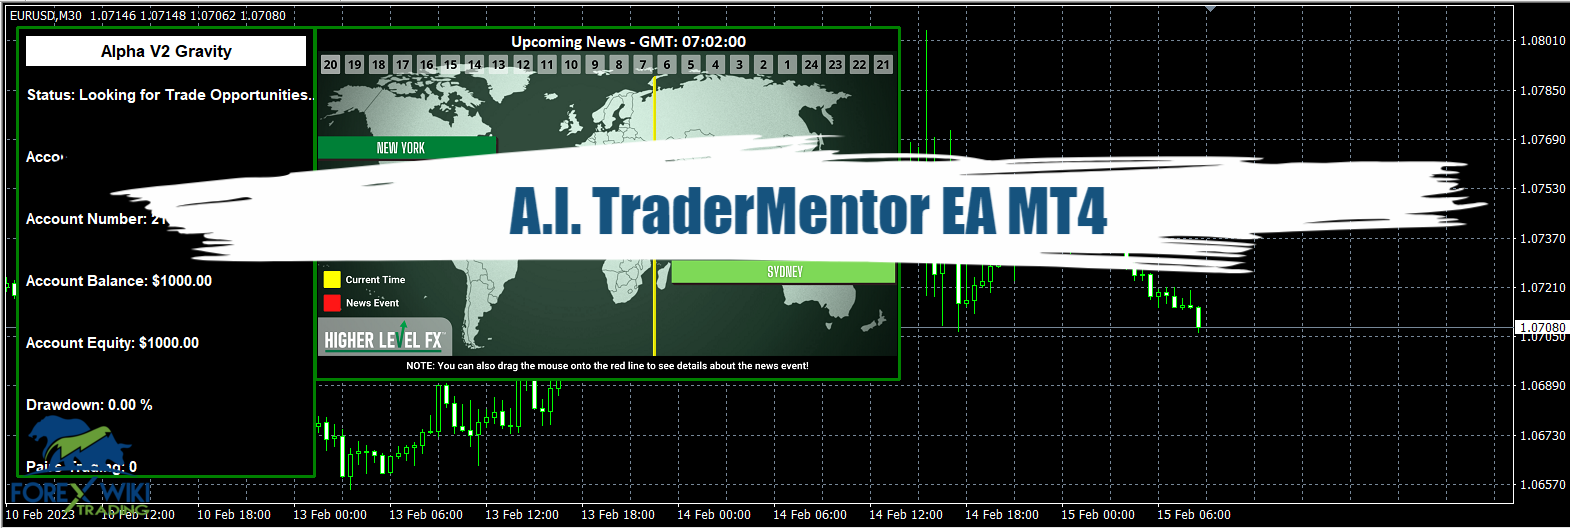 A.I. TraderMentor EA MT4 - Free Download 6